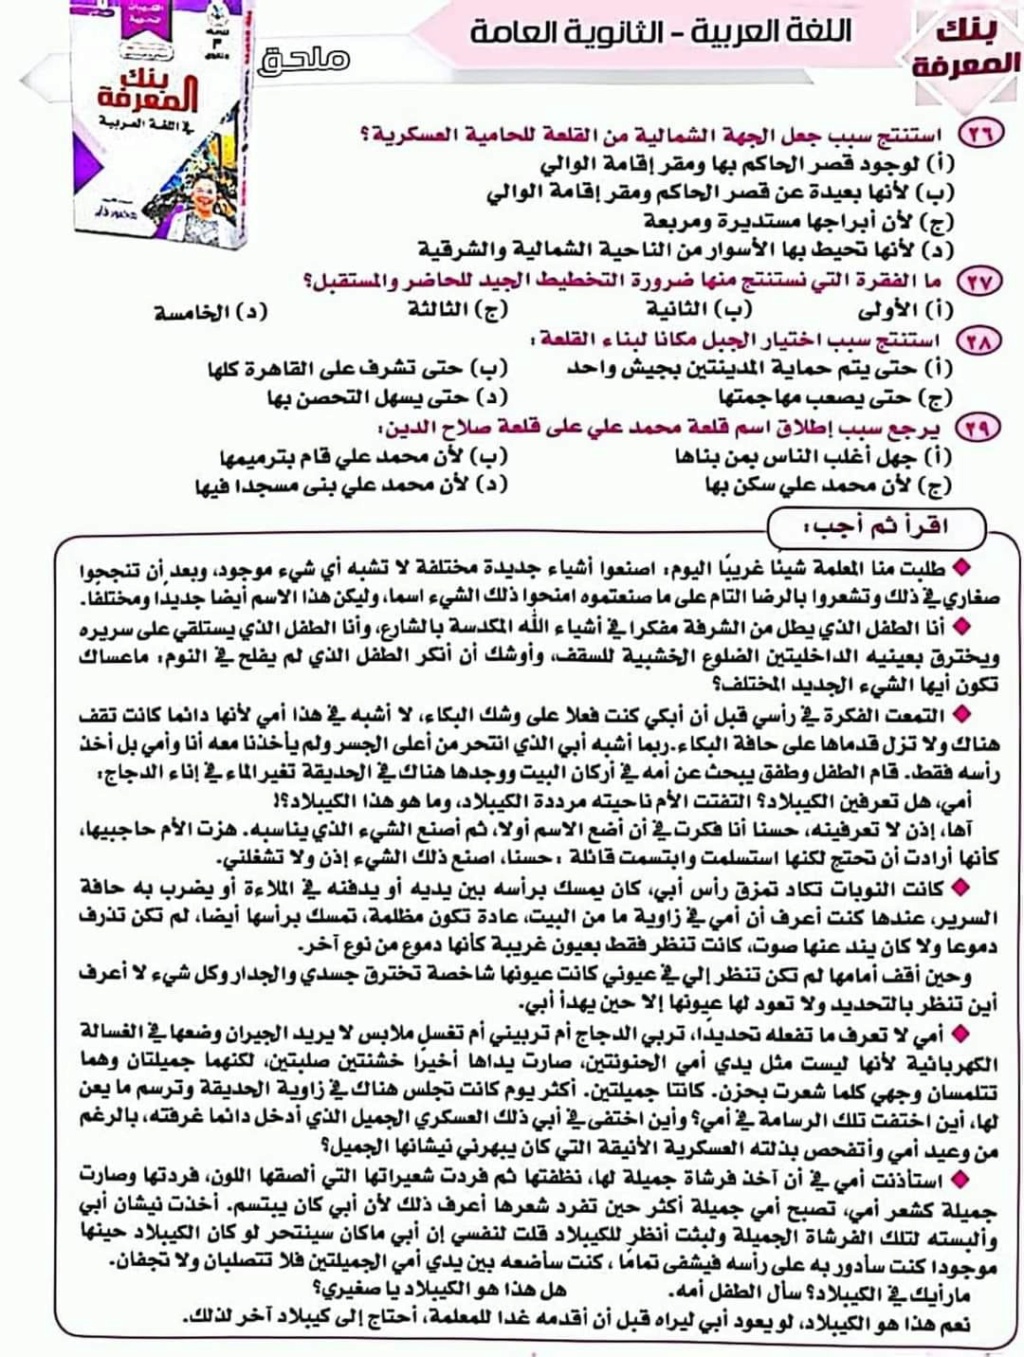 امتحان لغة عربية نموذجي للصف الثالث الثانوي مطابق لآخر المواصفات أ. ابراهيم الجابري 7167